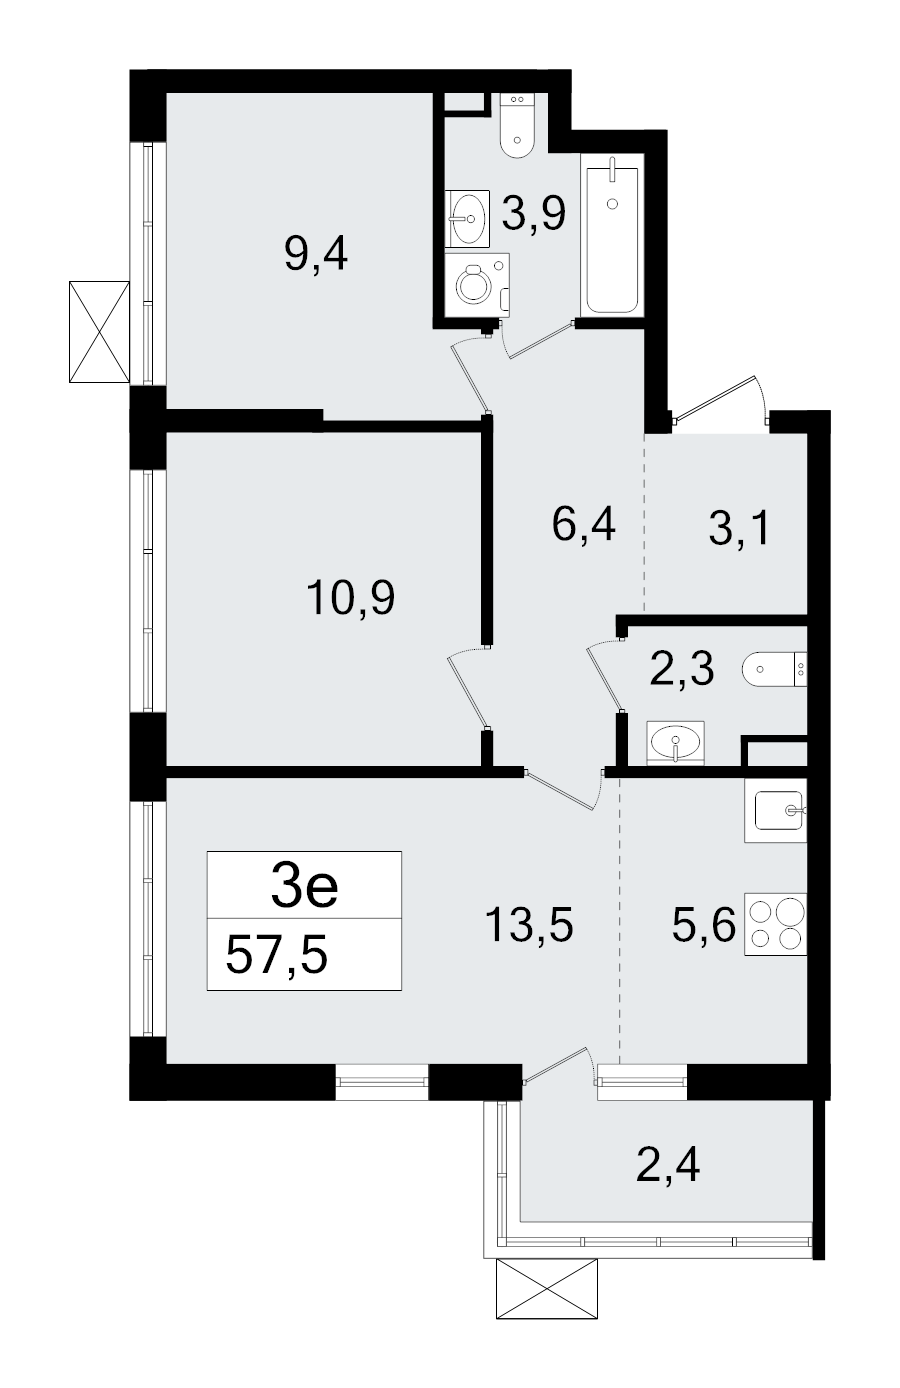 3-комнатная (Евро) квартира, 57.5 м² в ЖК "А101 Всеволожск" - планировка, фото №1